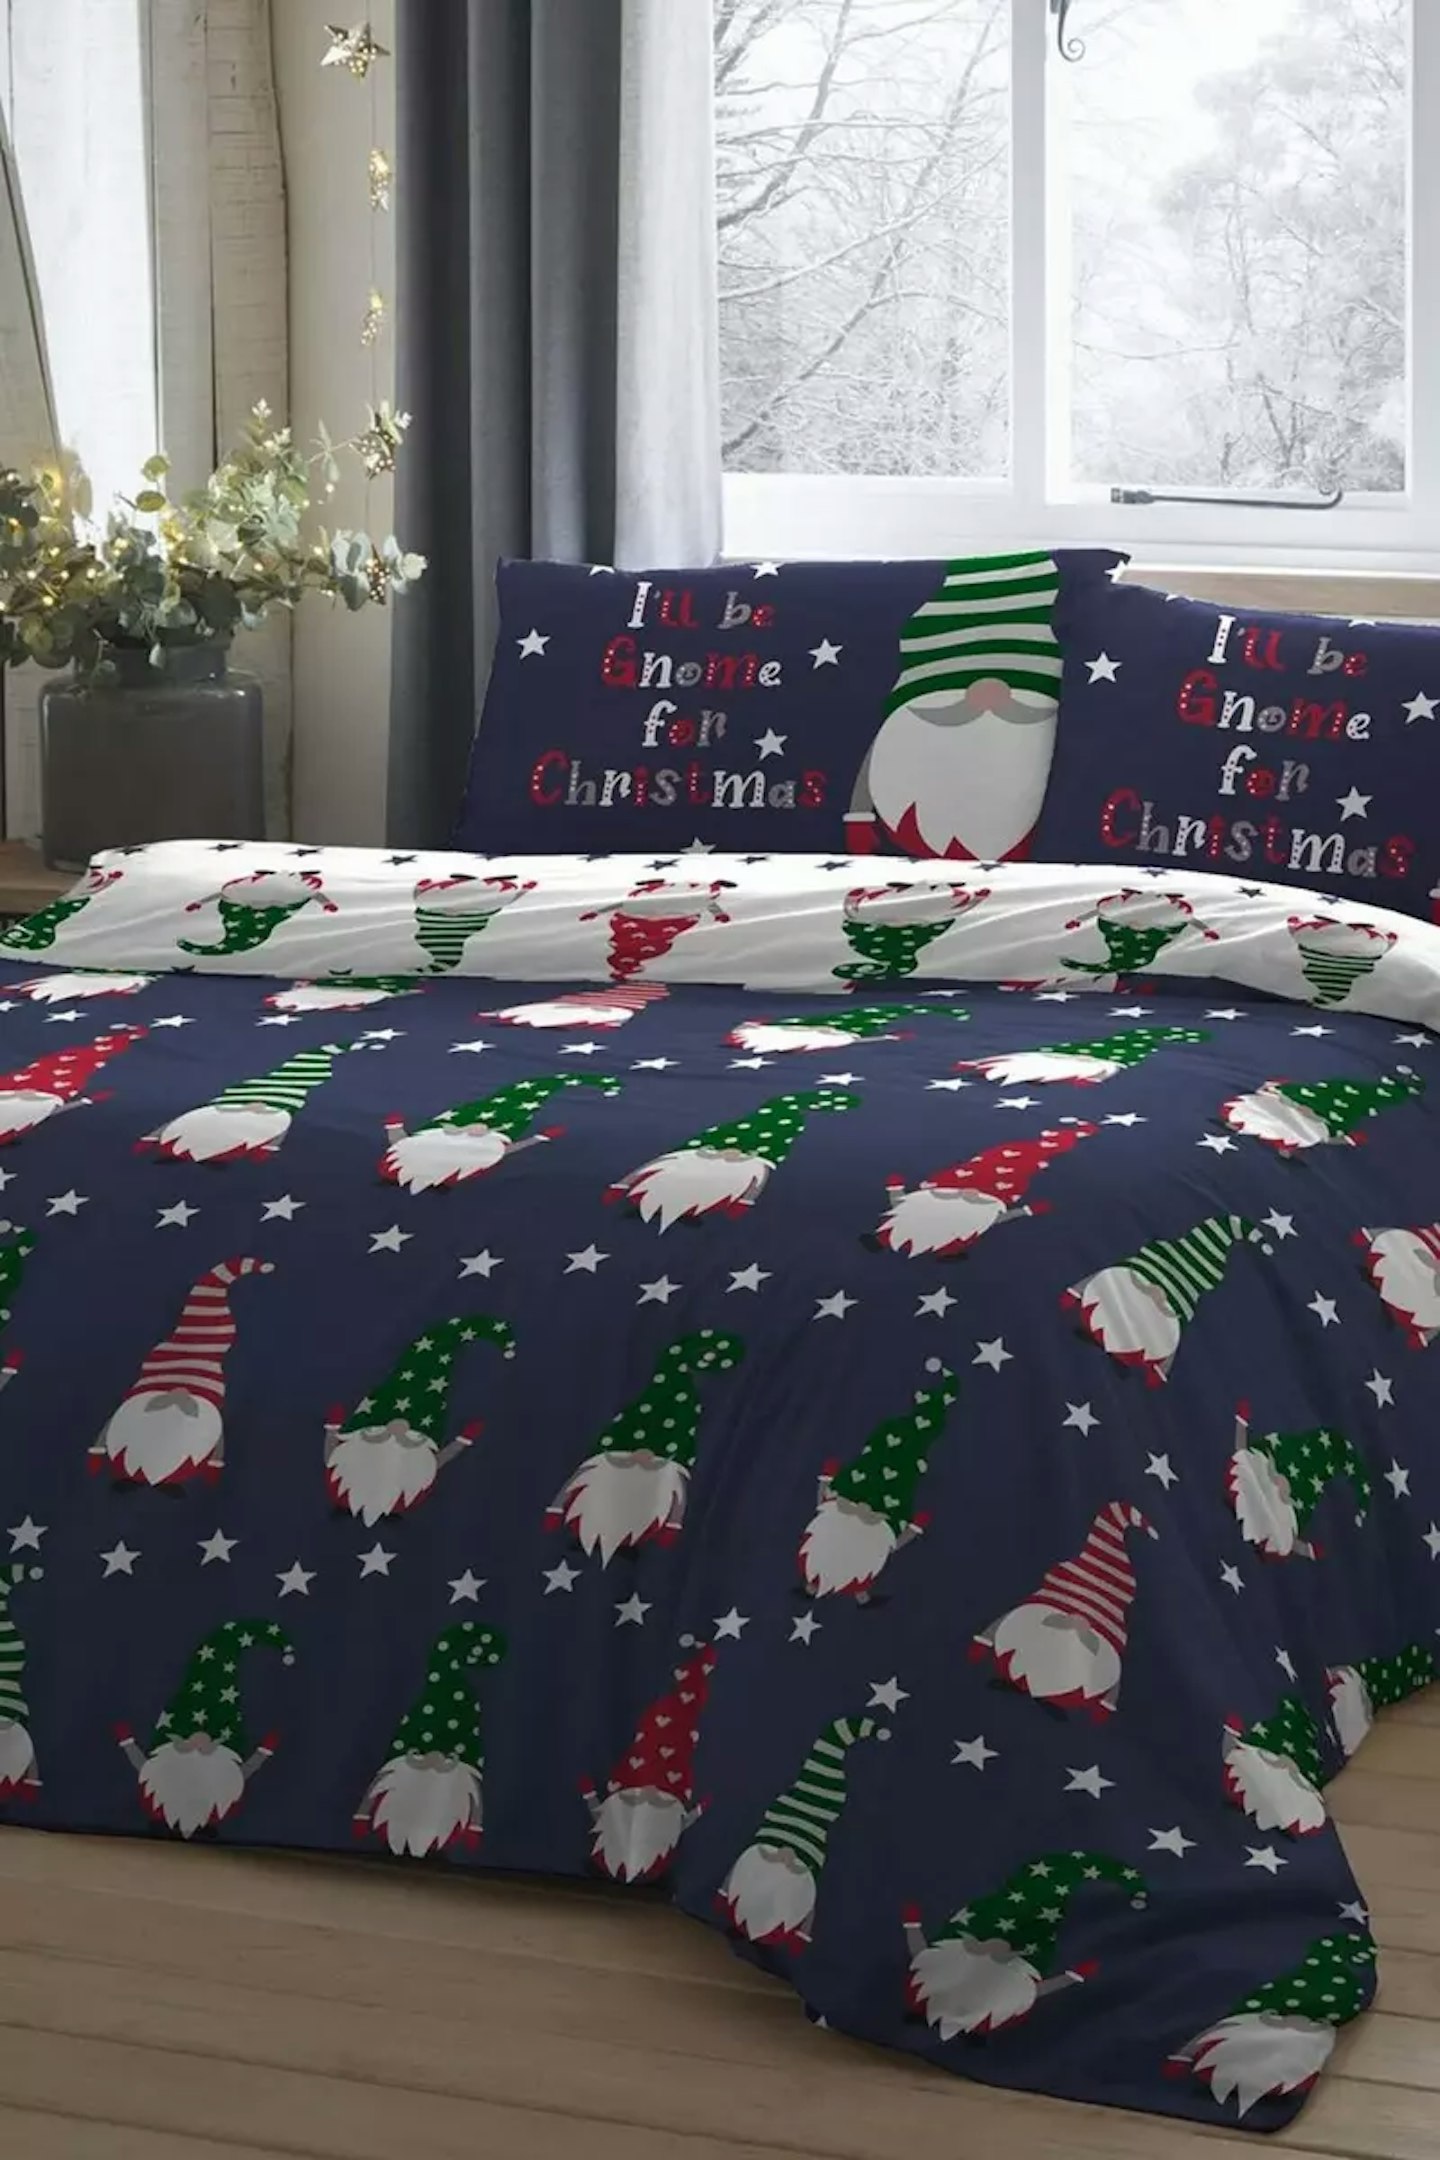 Kids' Christmas bedding